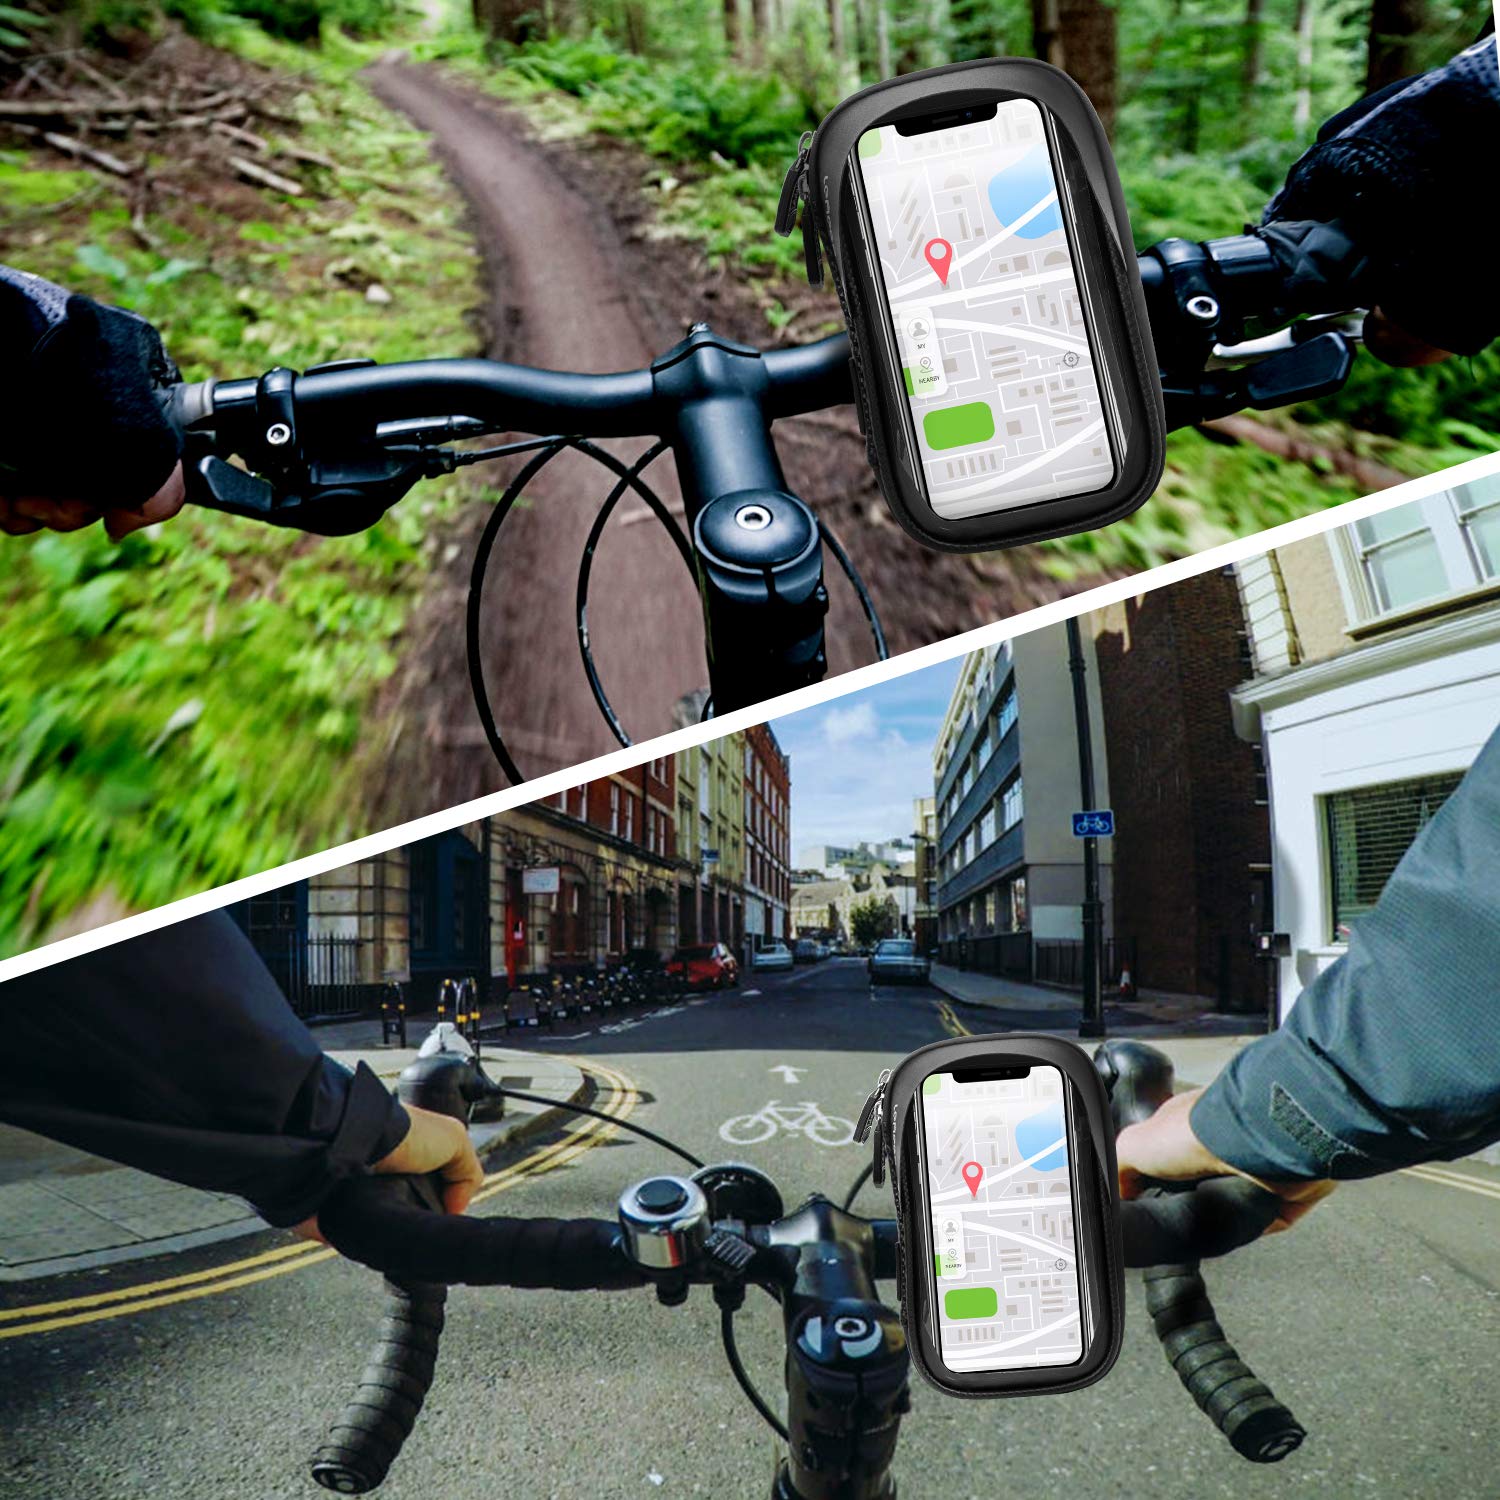 Soporte impermeable para teléfono móvil con pantalla táctil para bicicleta